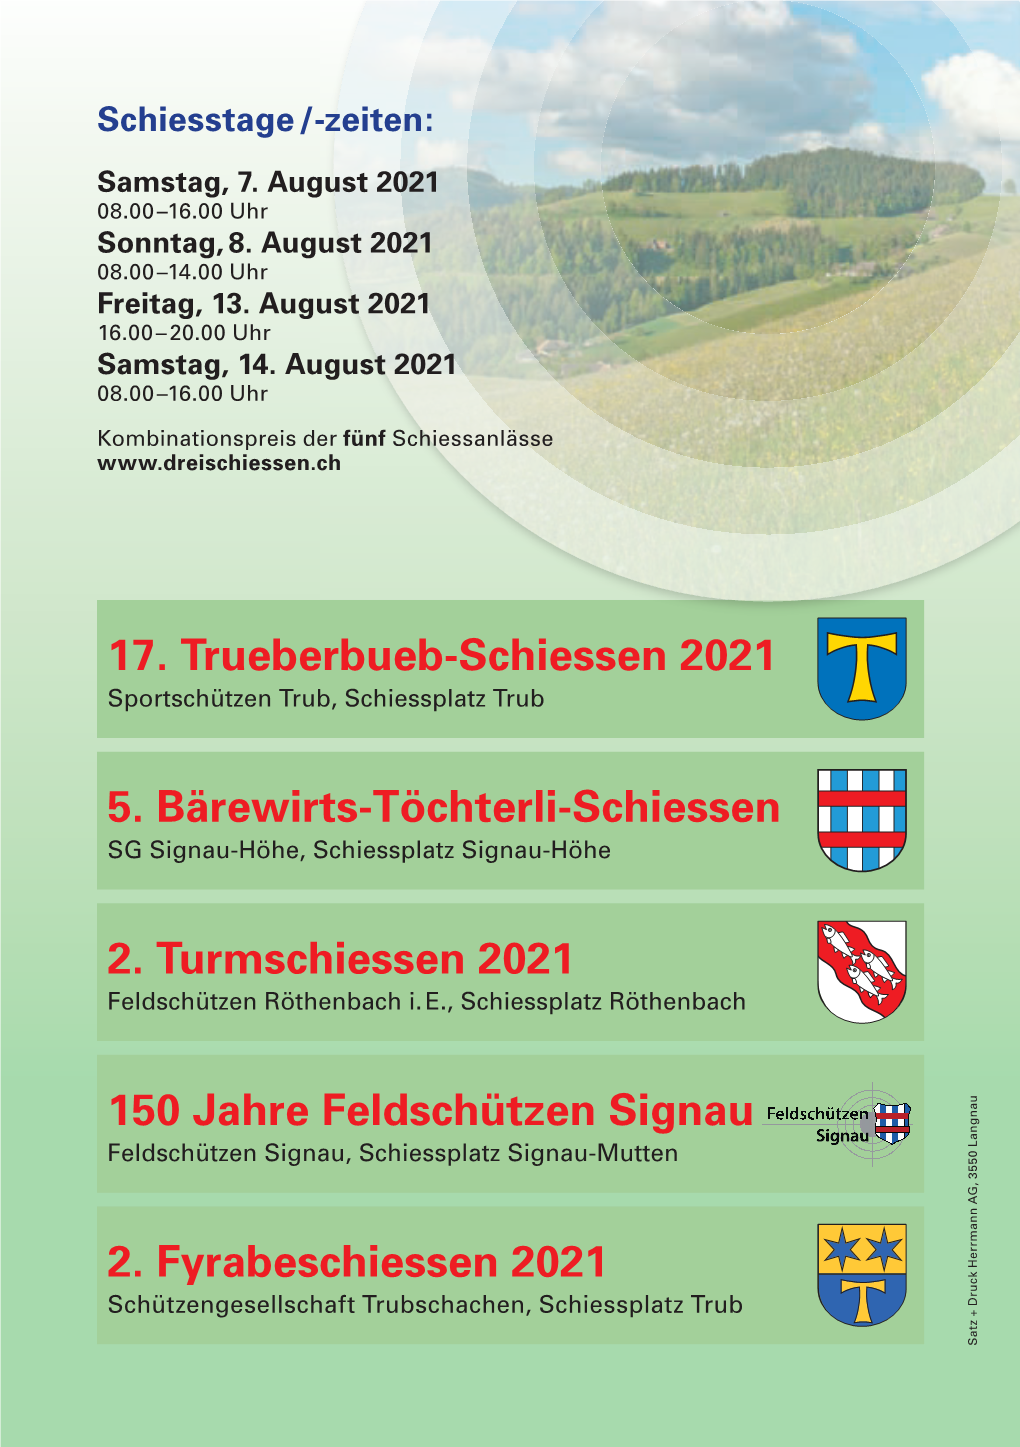 150 Jahre Feldschützen Signau 17. Trueberbueb-Schiessen 2021 5